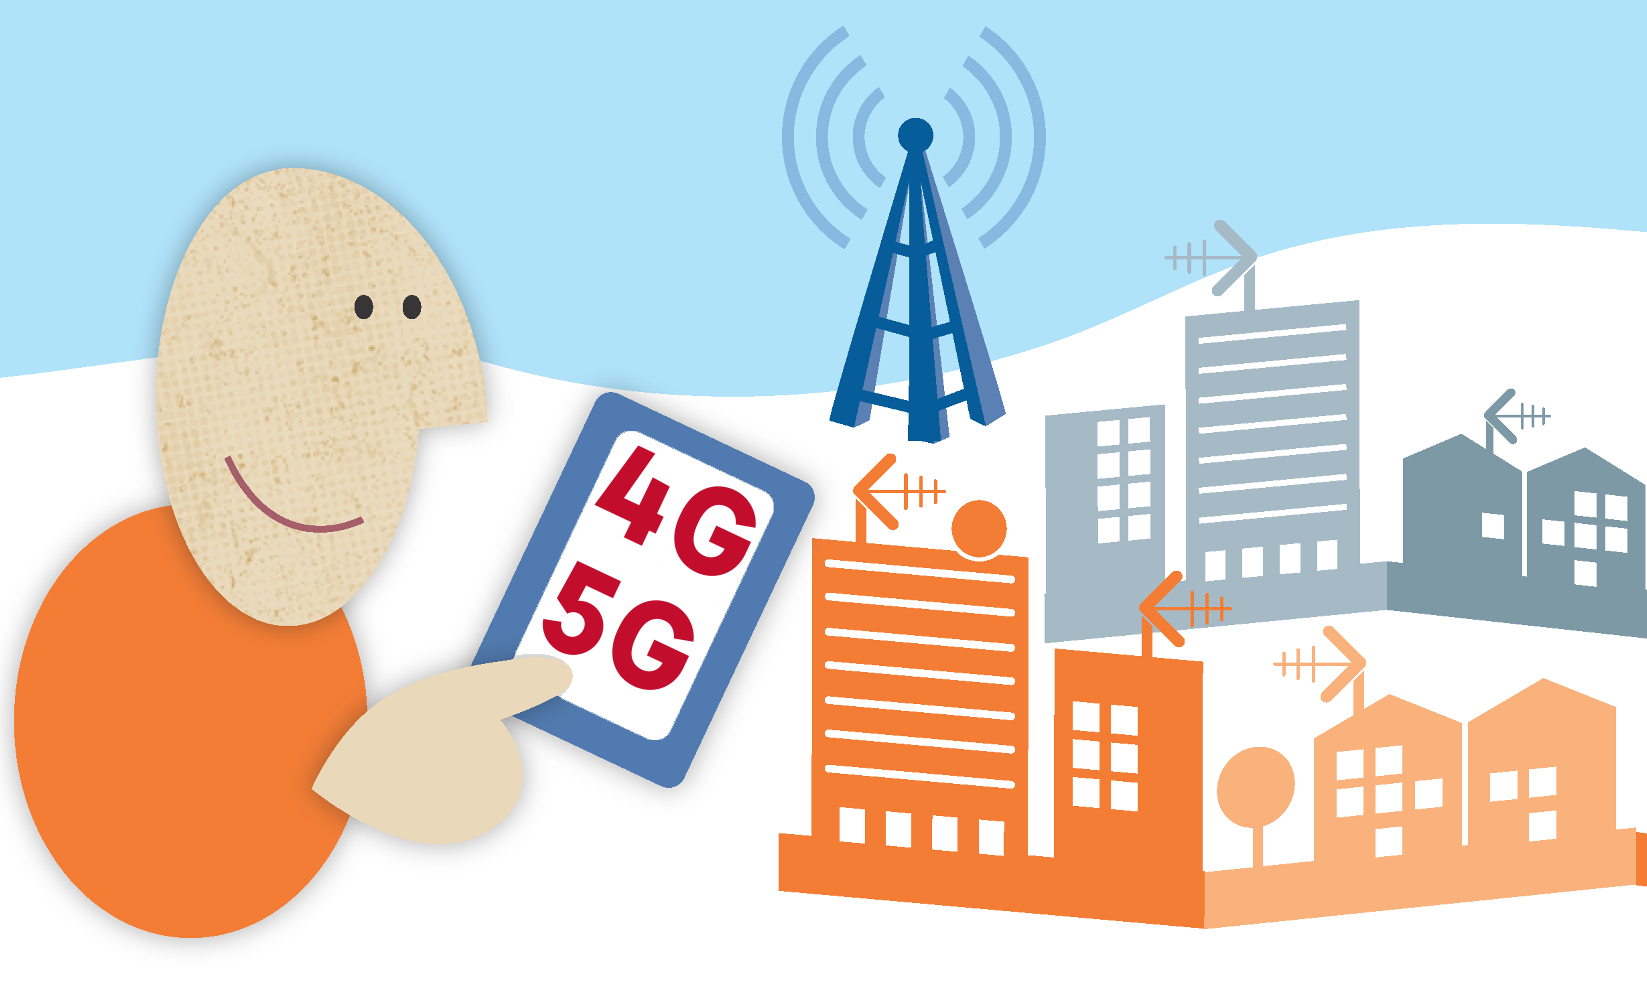 Implantació de la tecnologia mòbil 4G i 5G, per gaudir d'Internet mòbil d'alta velocitat i una millor cobertura